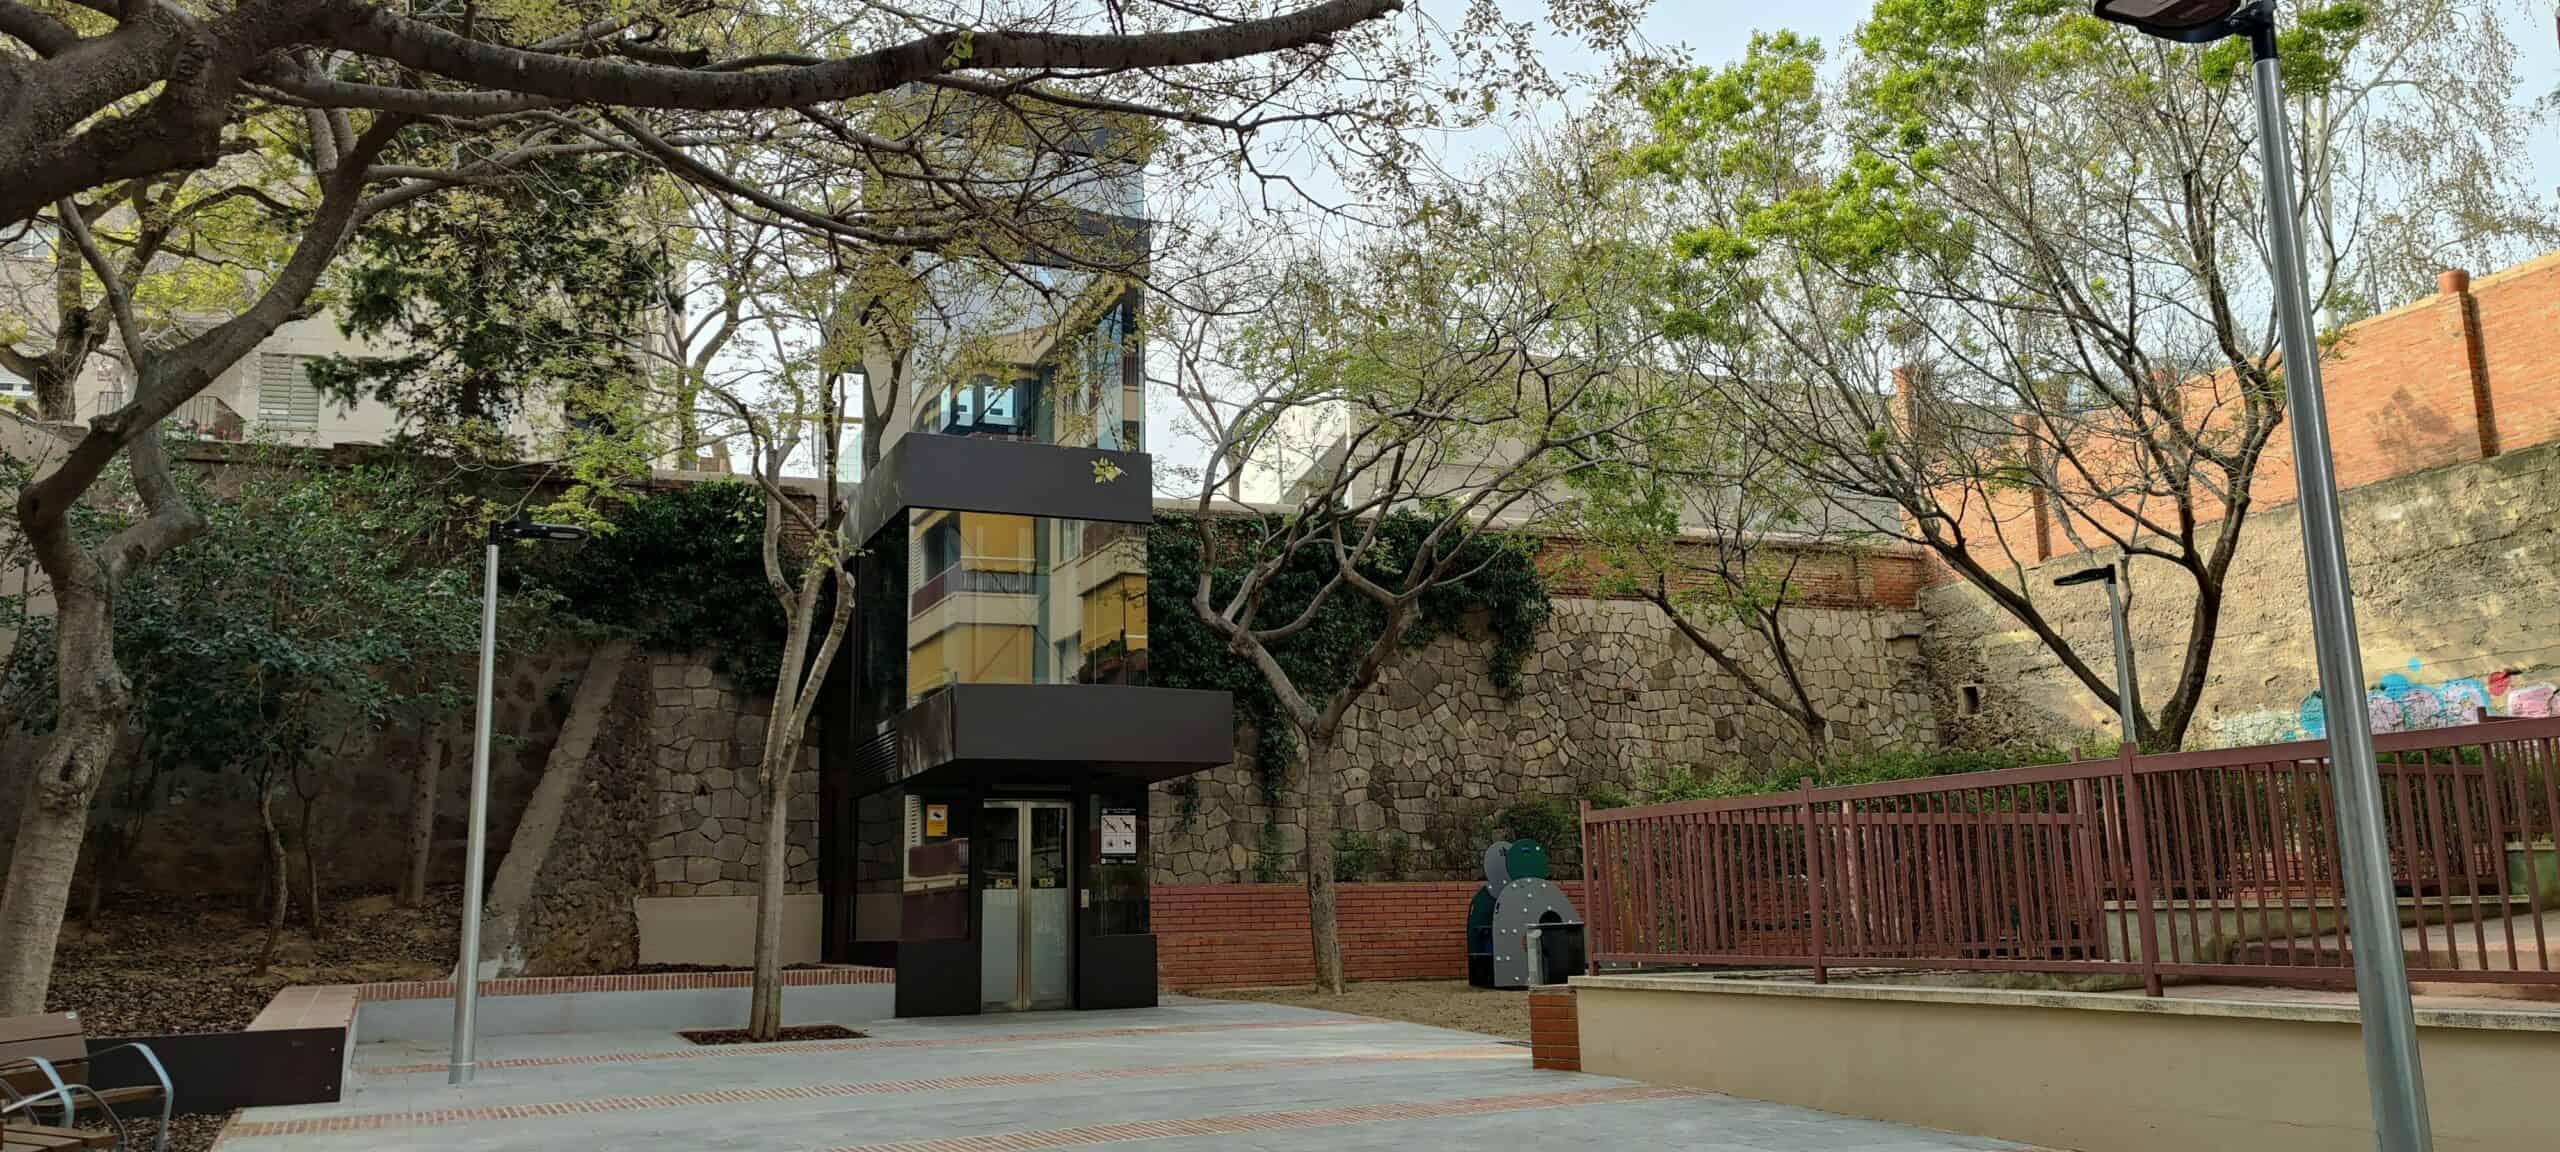 L'ascensore per il quartiere di Horta collega due strade con dislivelli